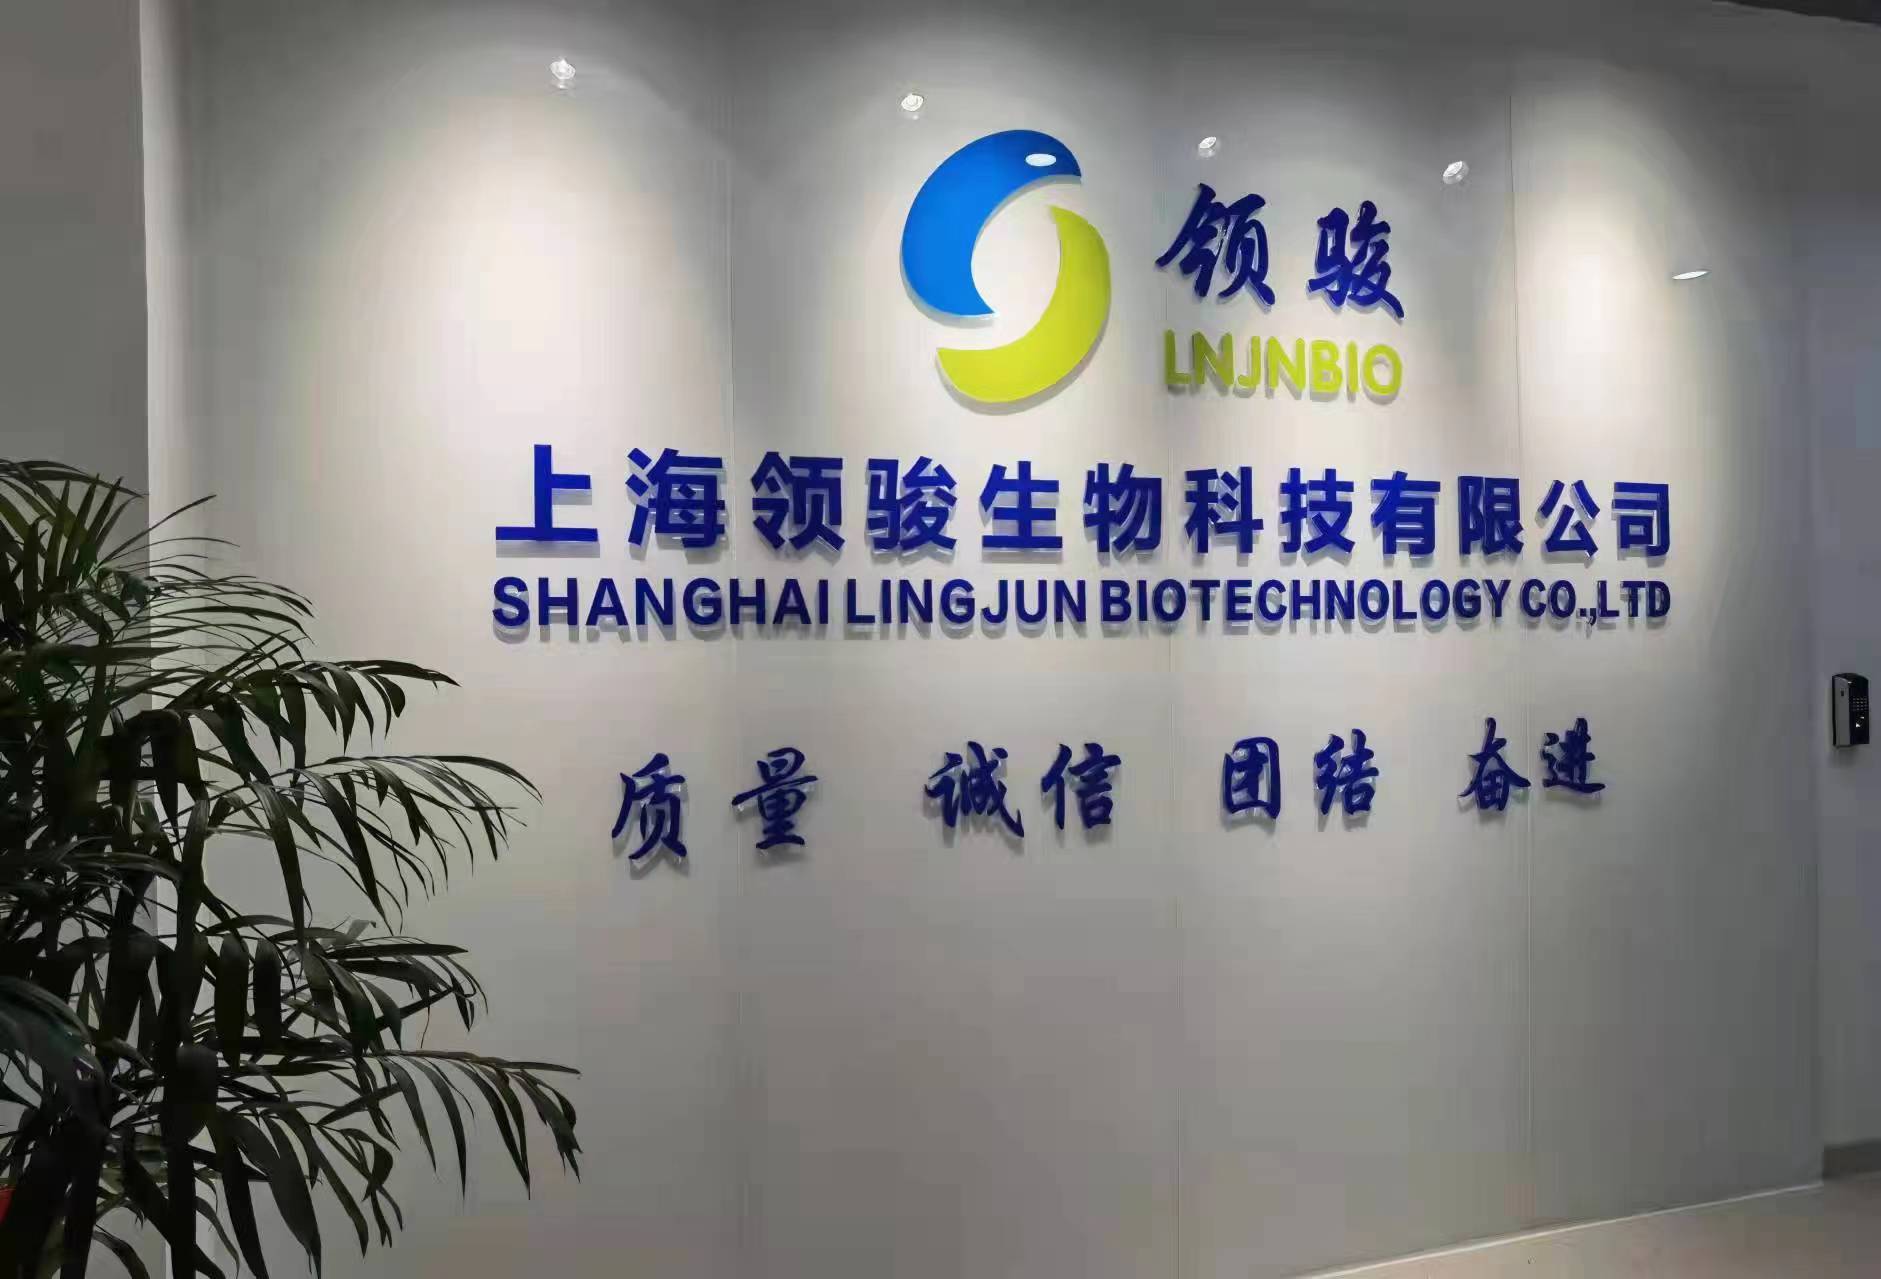 上海领骏生物科技有限公司,